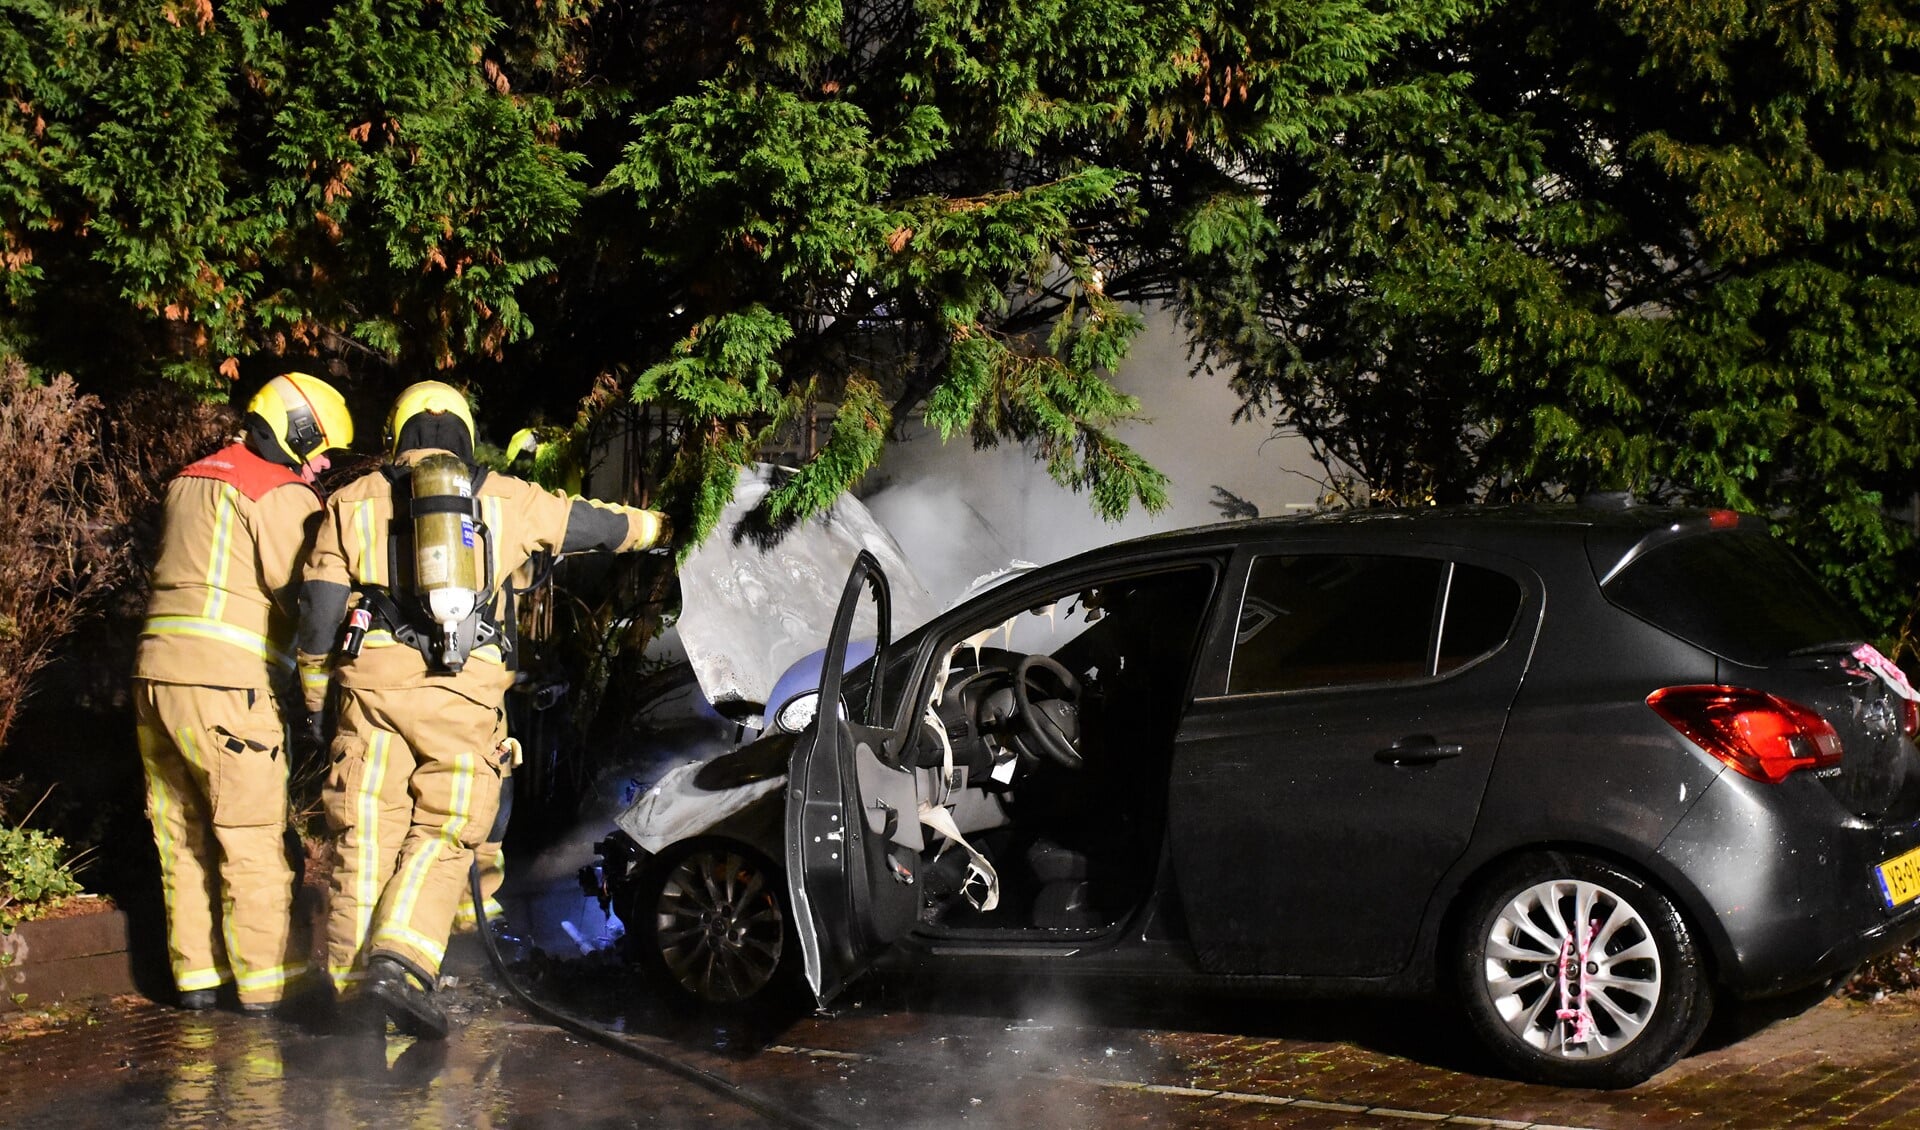 De afgelopen weken werden diverse auto's in brand gestoken en werden objecten opgeblazen met zwaar vuurwerk (archieffoto Regio15).